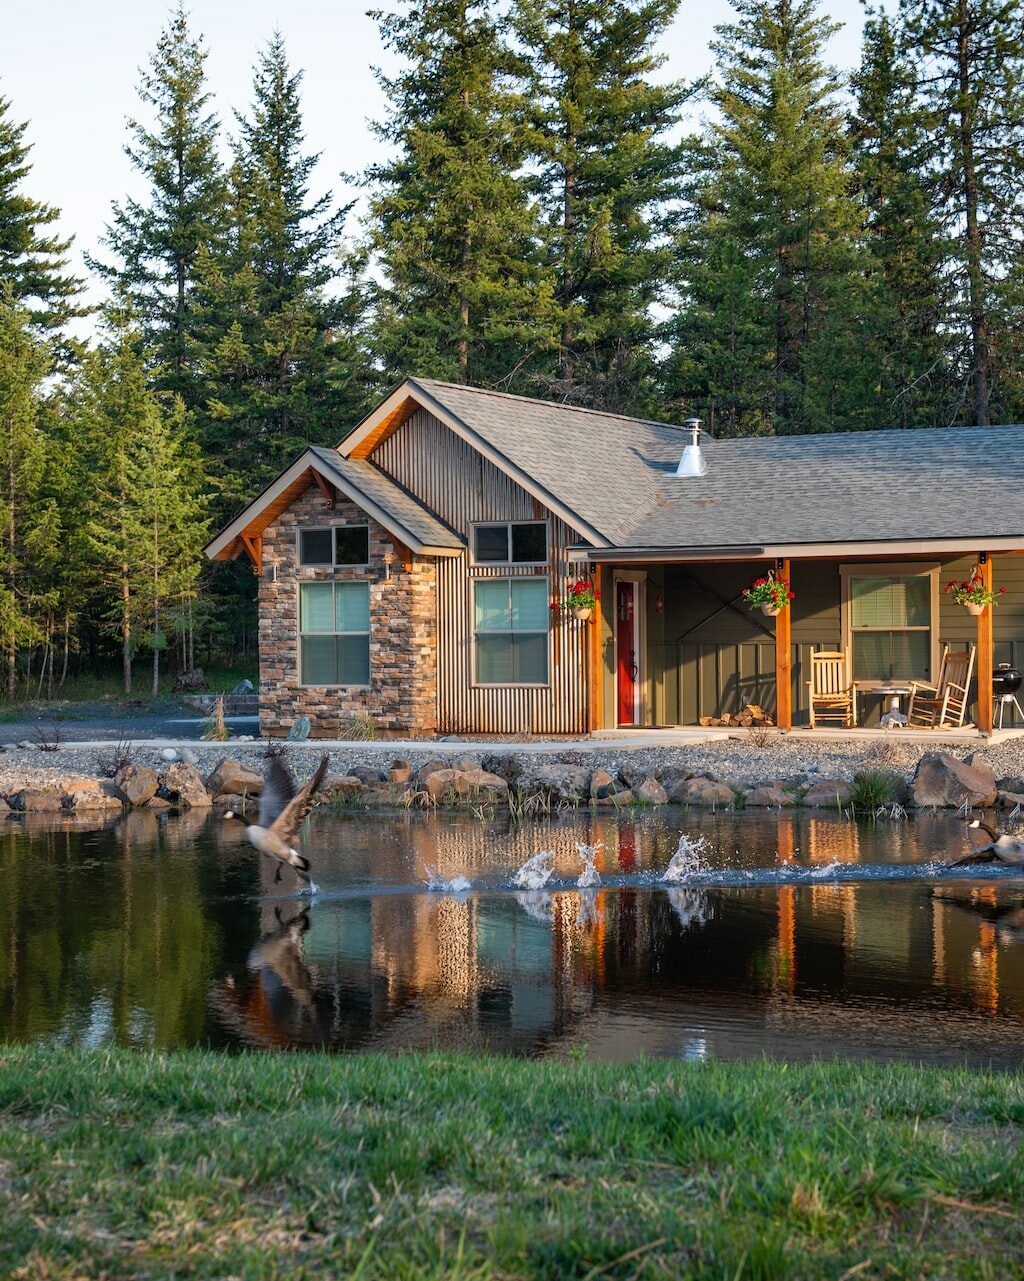 Maison au bord d'un lac.